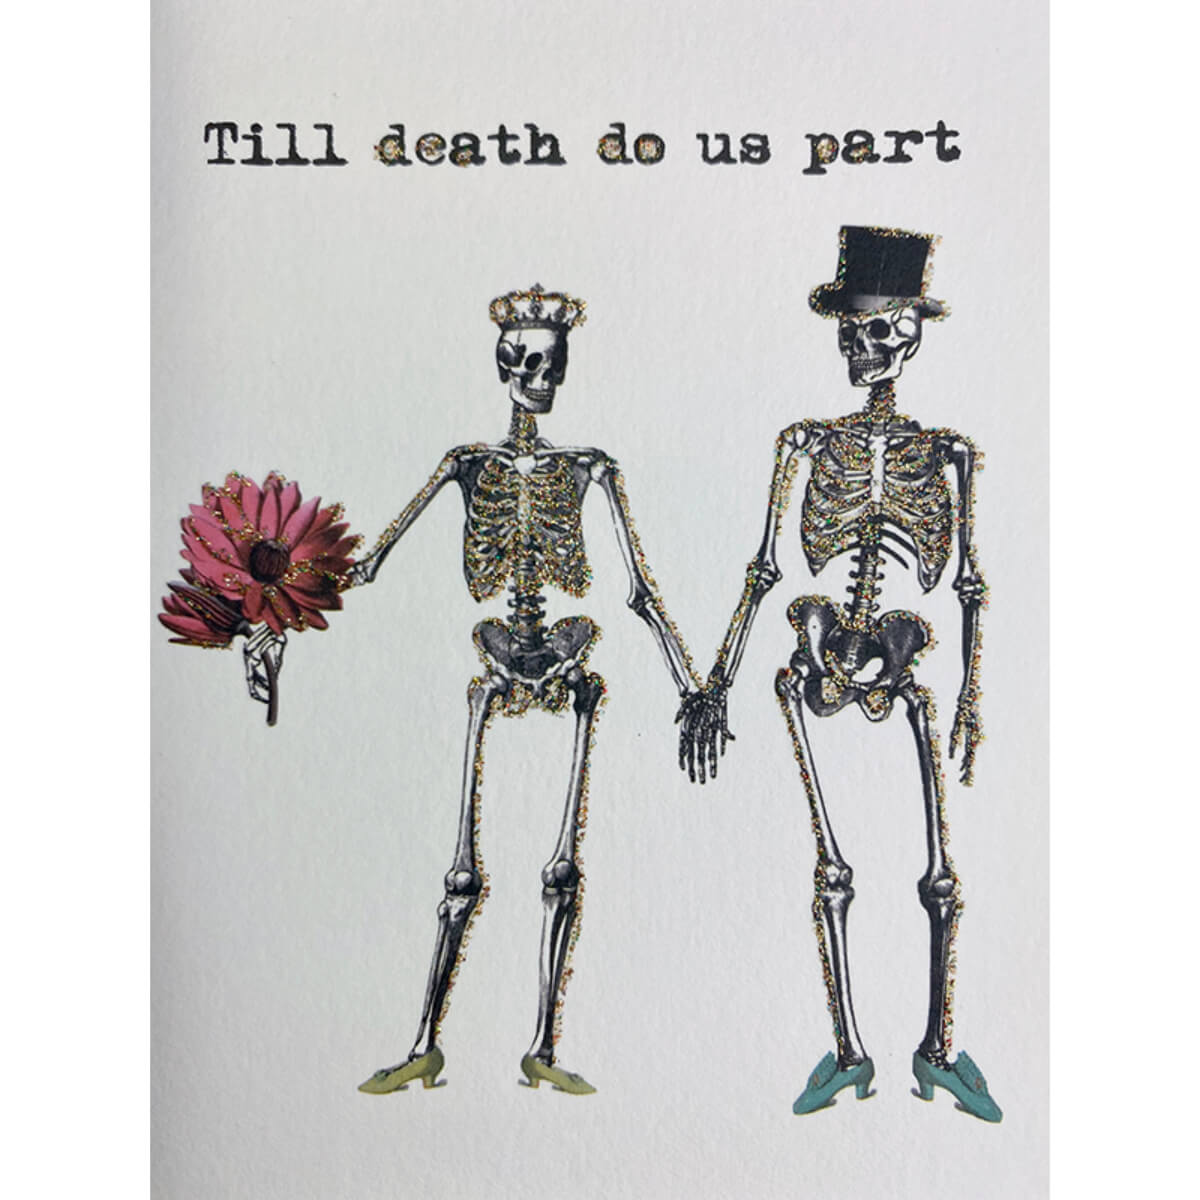 Kort - Till death do us part